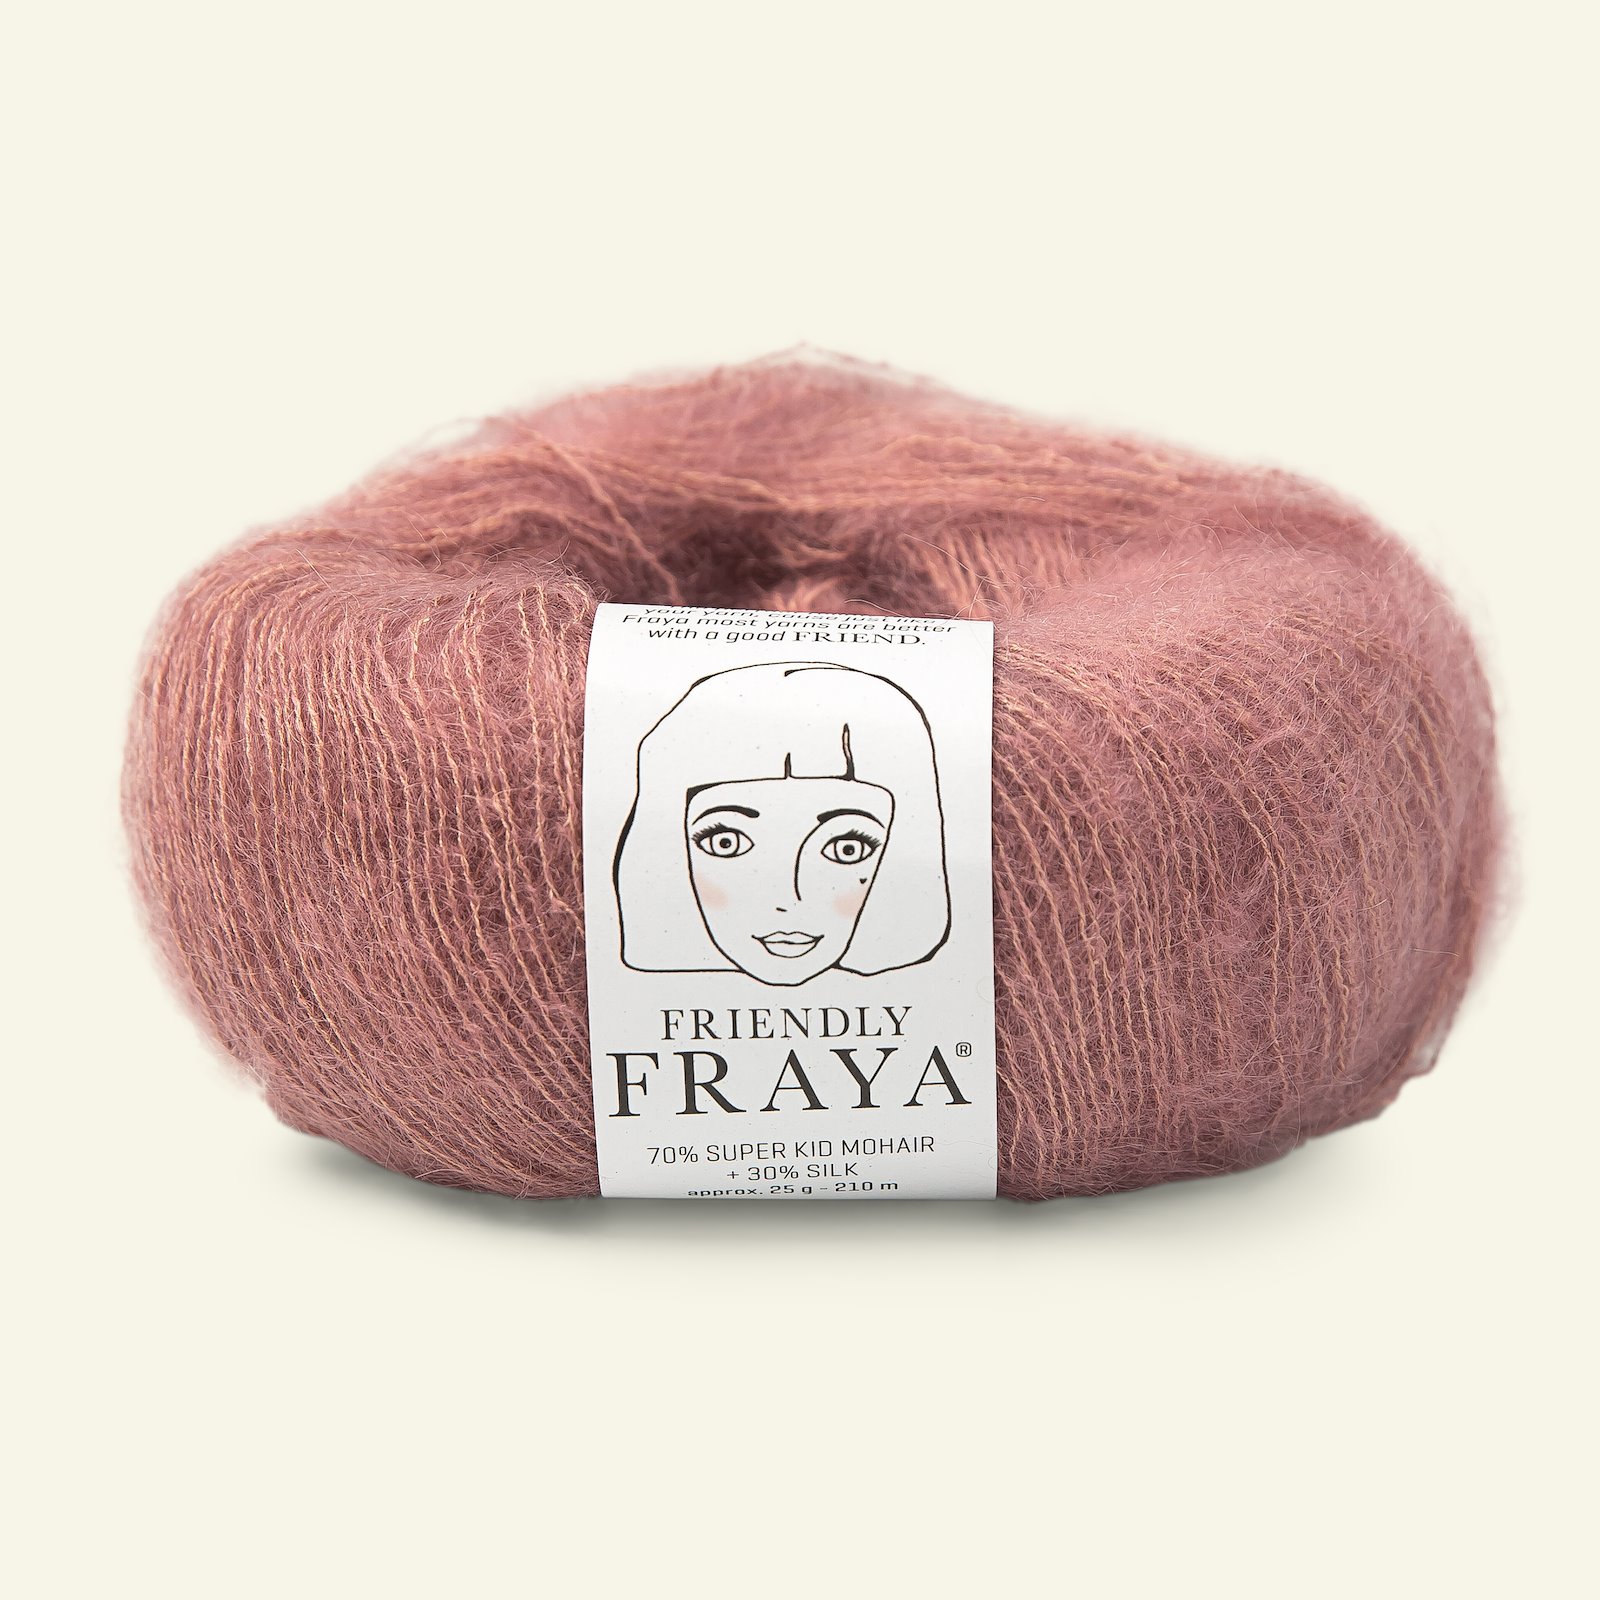 FRAYA, silk mohair yarn "Friendly", dusty rose 90054988_pack